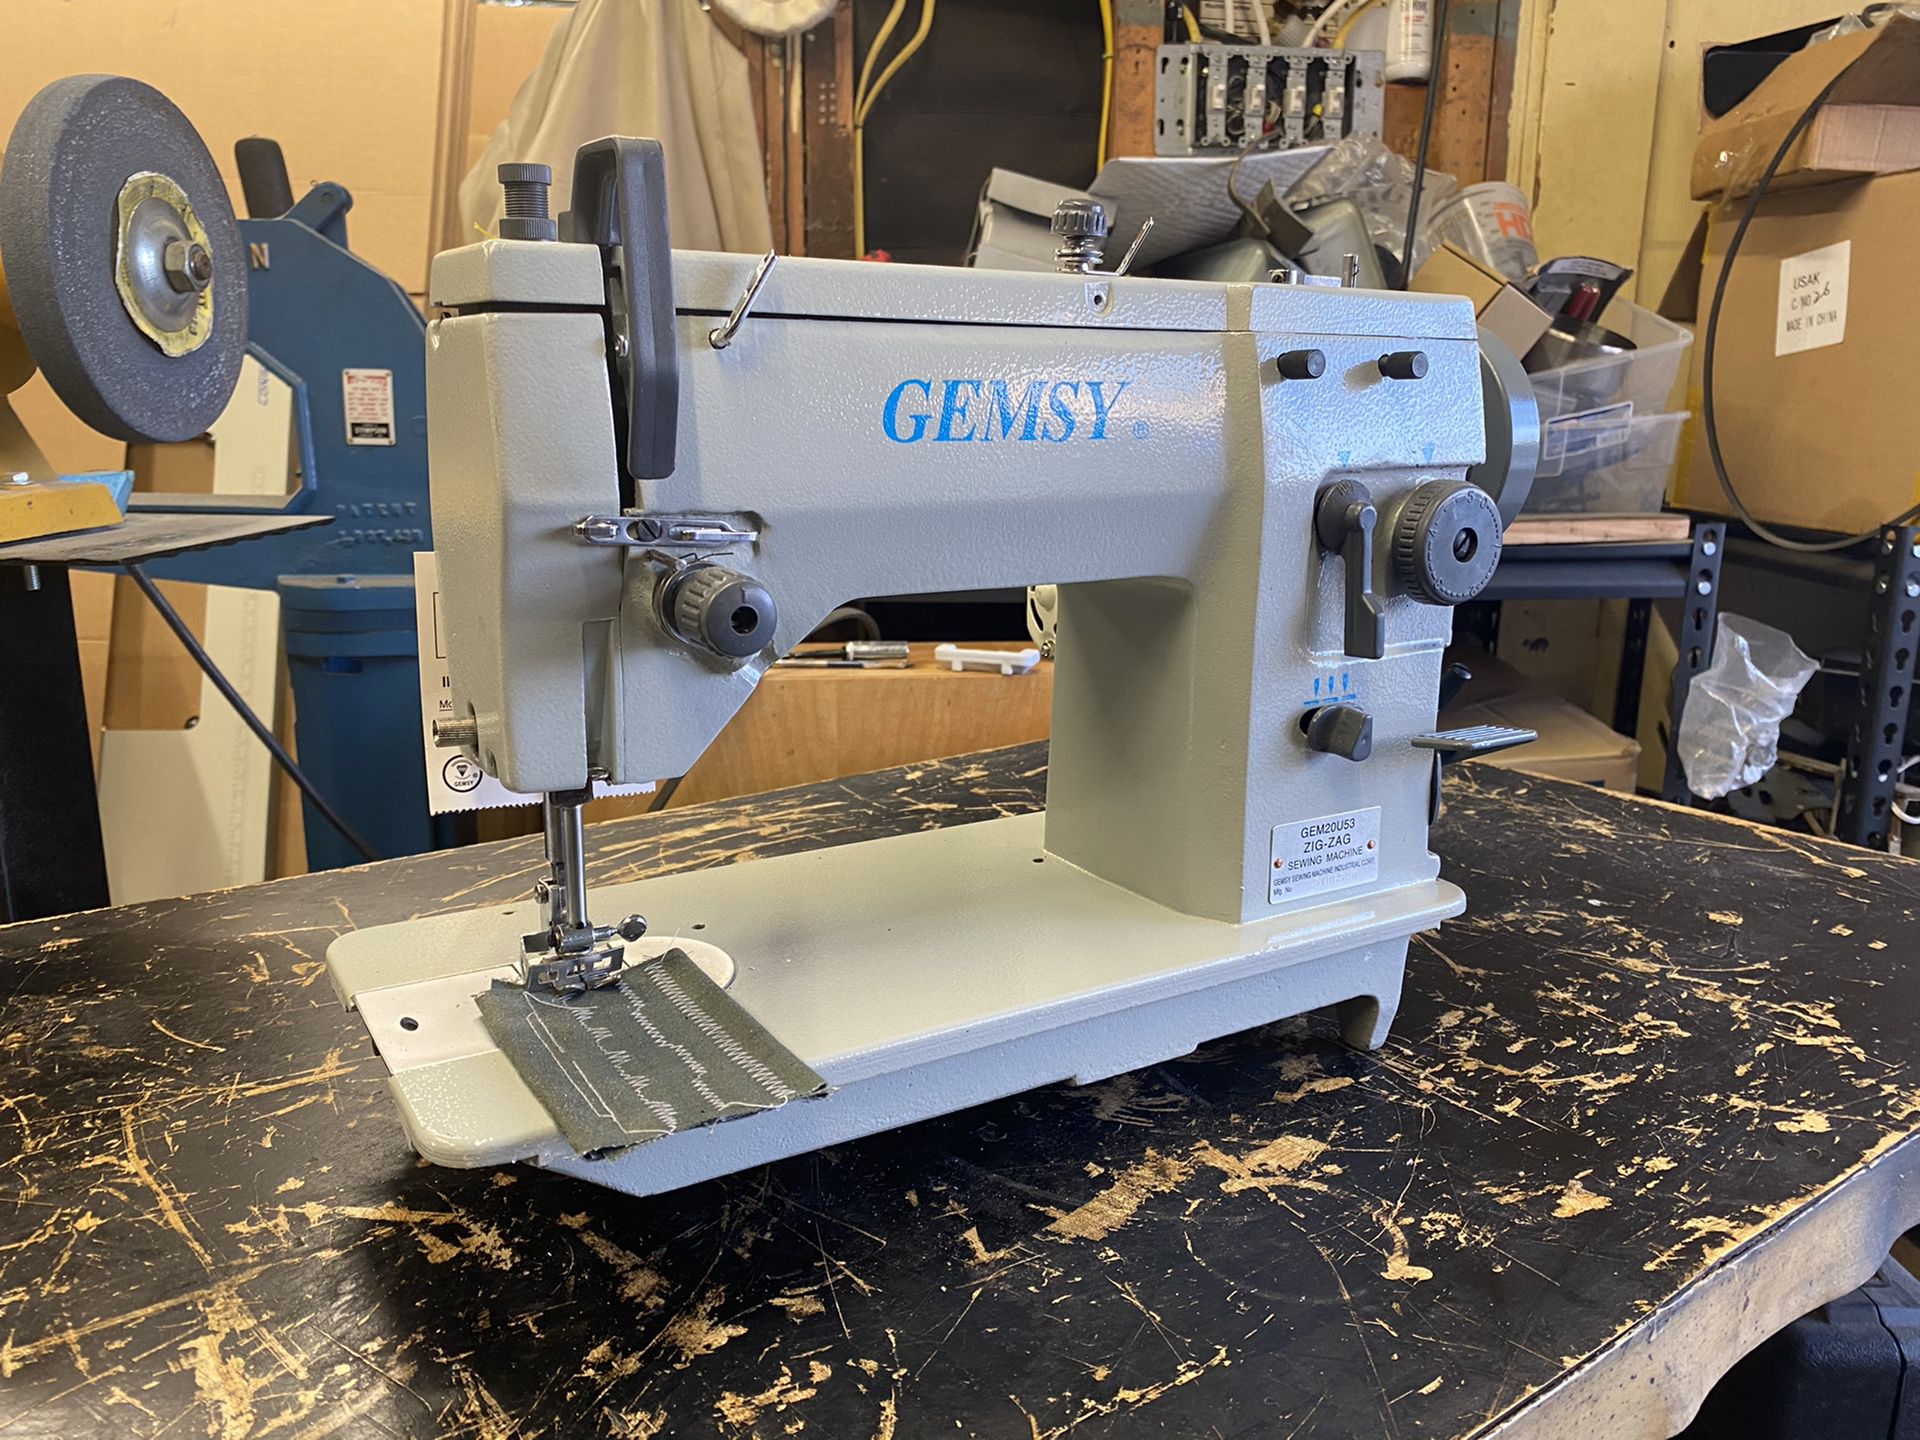 Gemsy semi industrial sewing machine